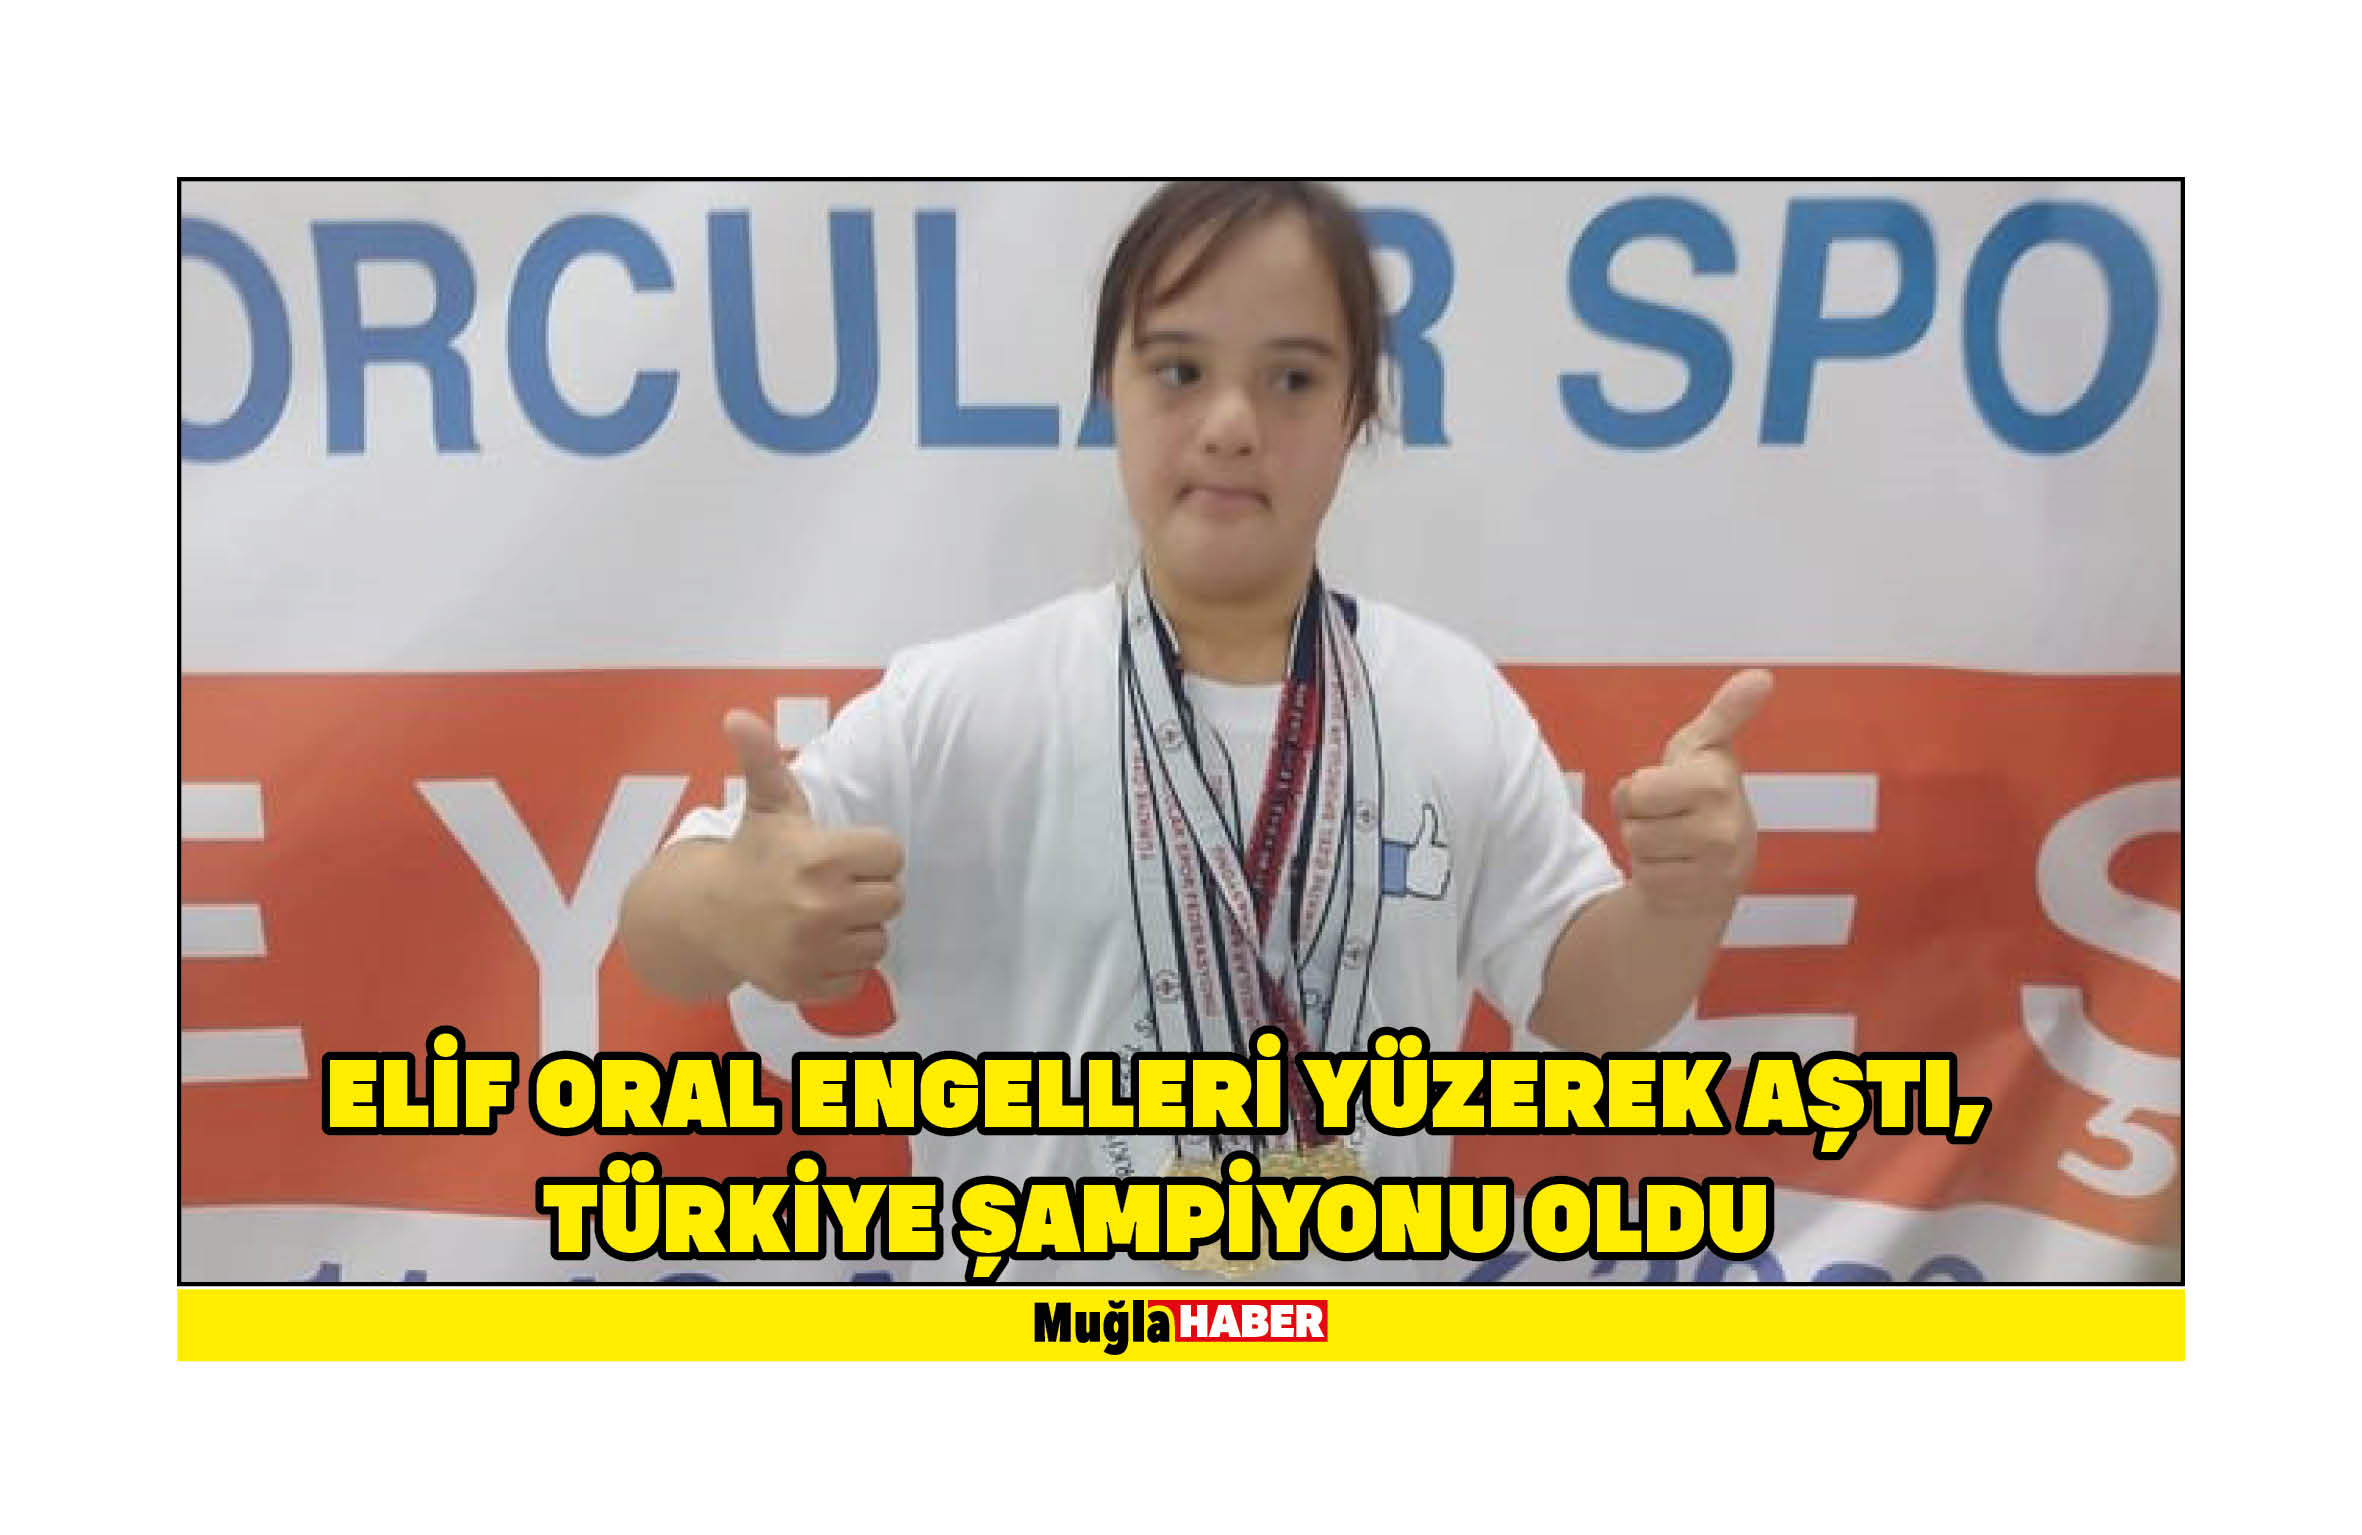 Elif Oral Engelleri yüzerek aştı, Türkiye şampiyonu oldu